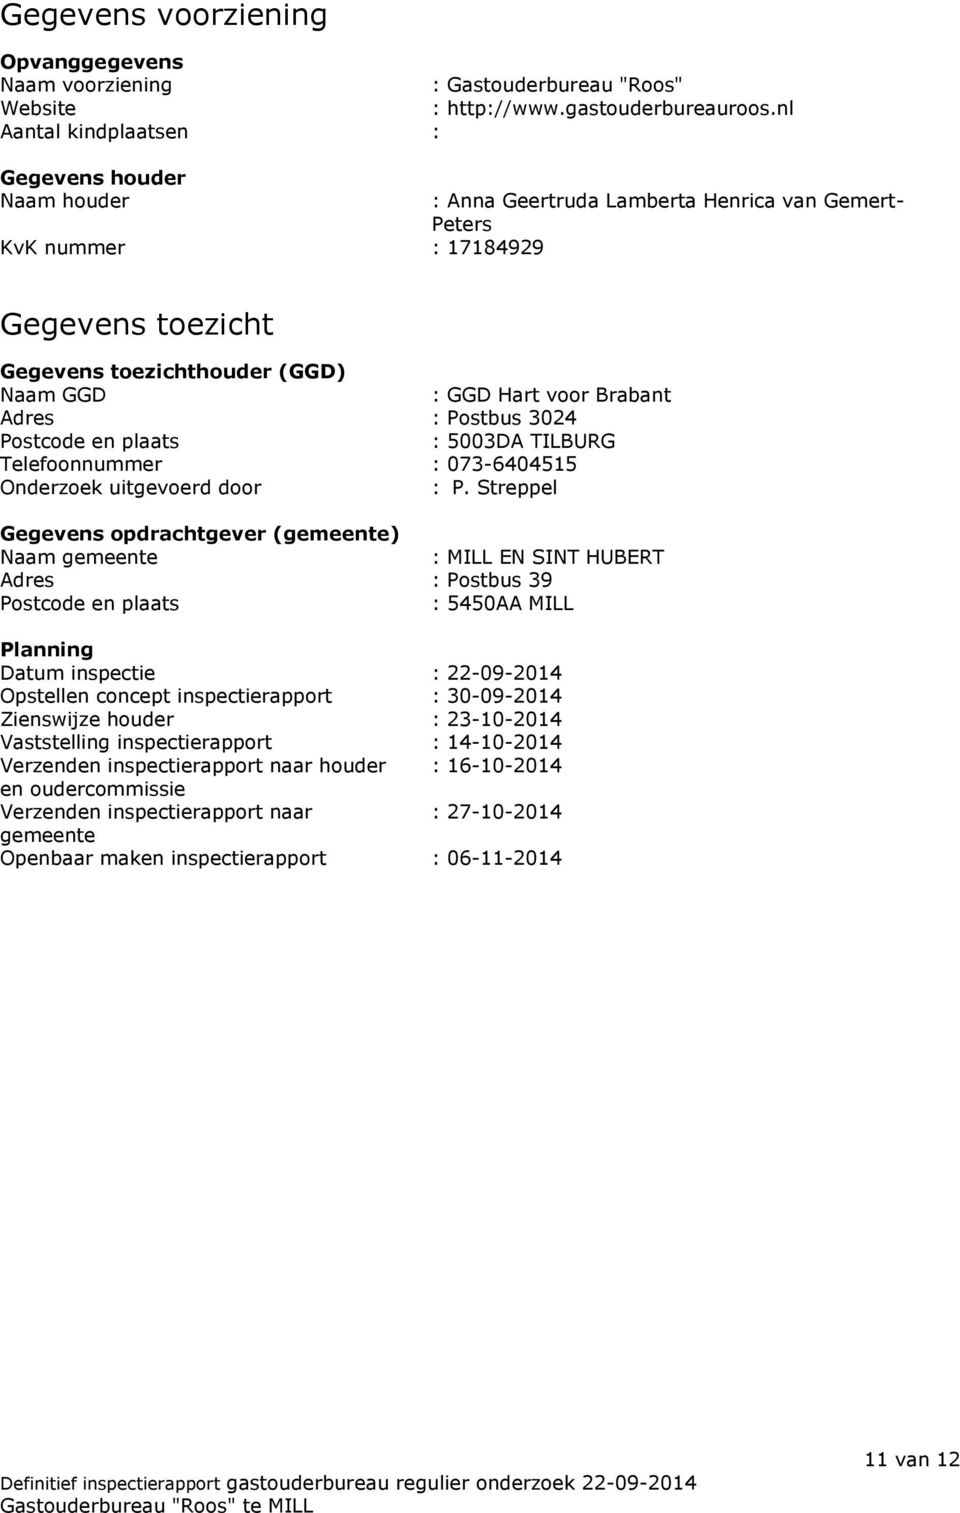 voor Brabant Adres : Postbus 3024 Postcode en plaats : 5003DA TILBURG Telefoonnummer : 073-6404515 Onderzoek uitgevoerd door : P.